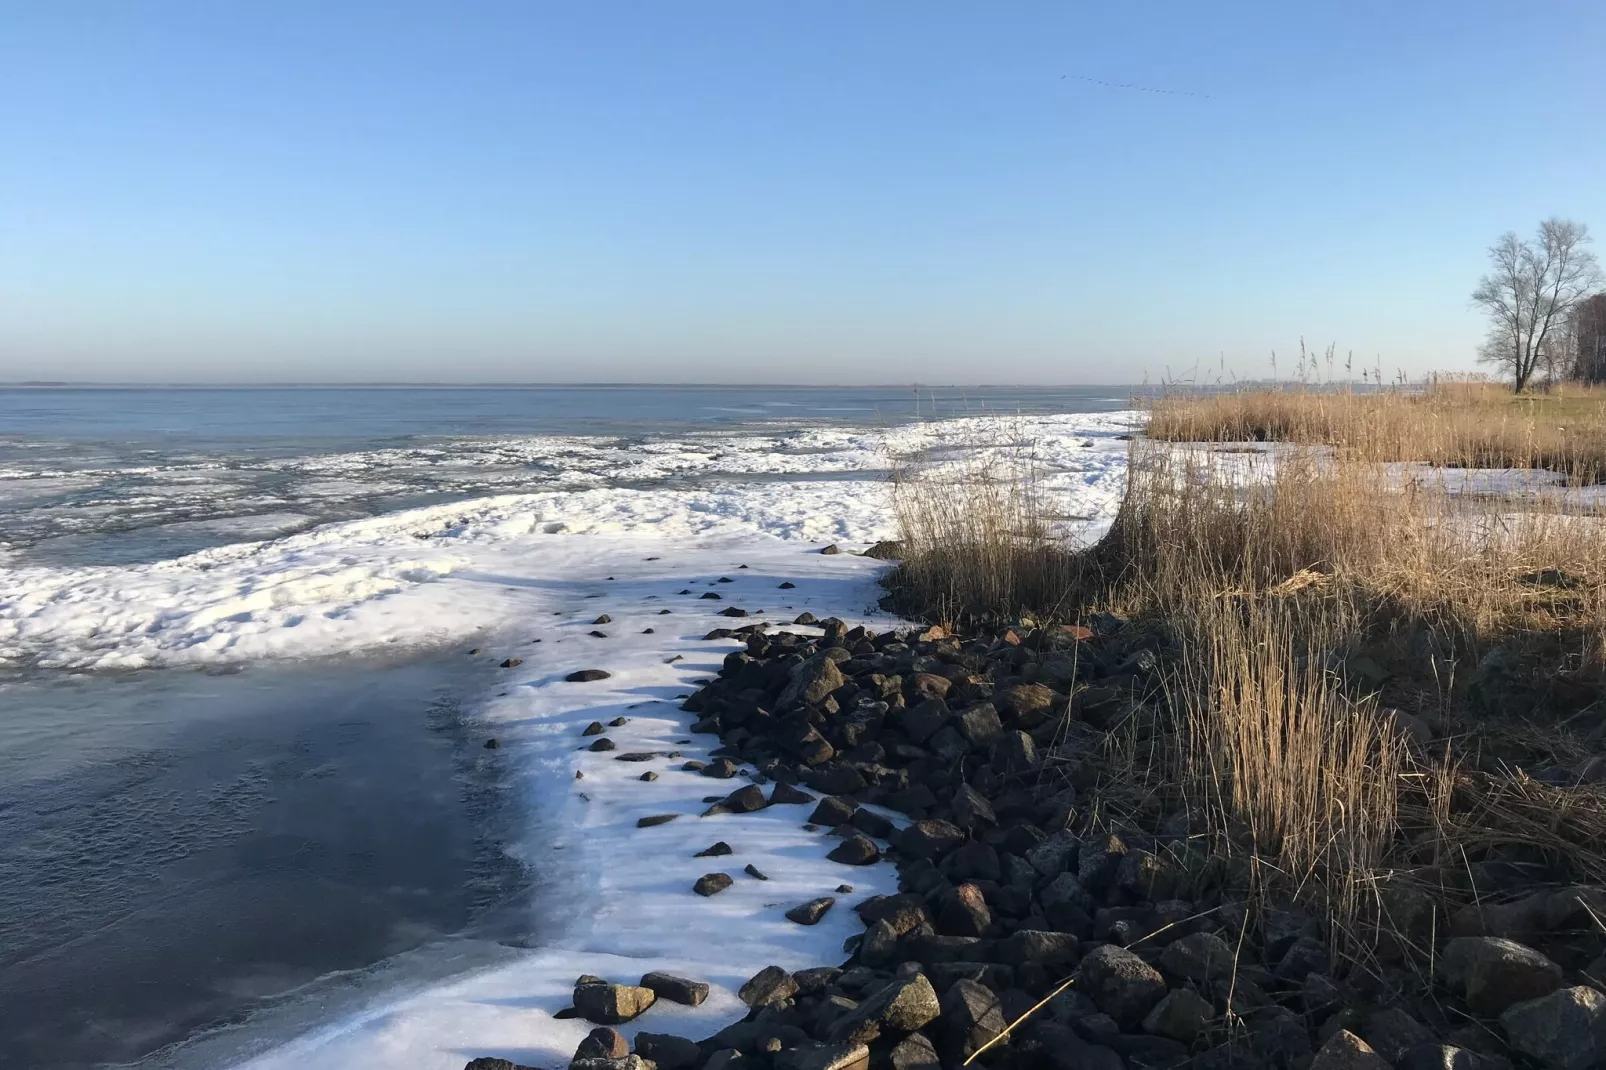 Ferienwohnung an der Ostsee in Pruchten naehe Kanalbrücke-Gebied winter 5km